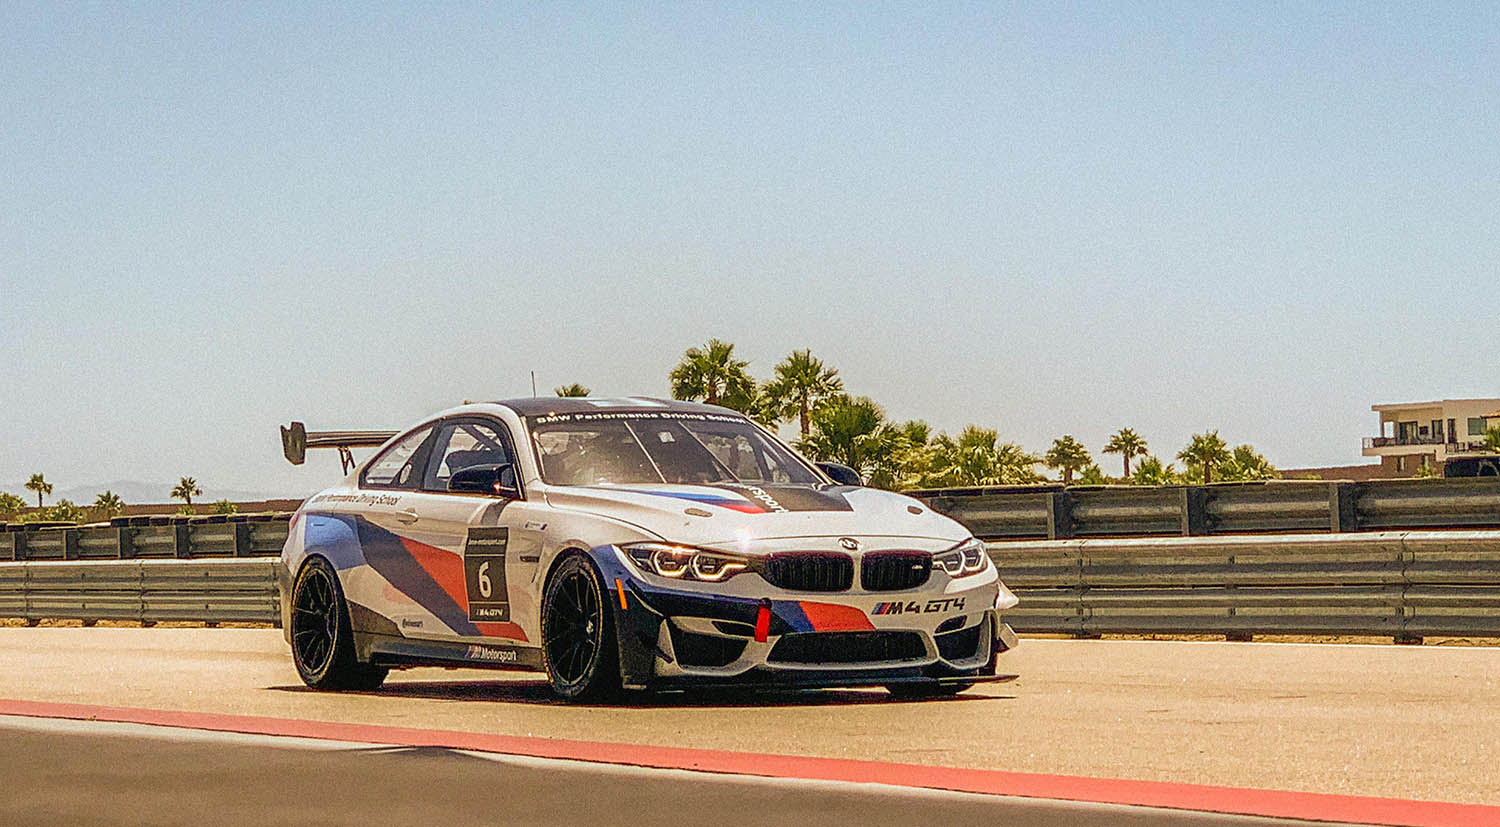 BMW on racetrack